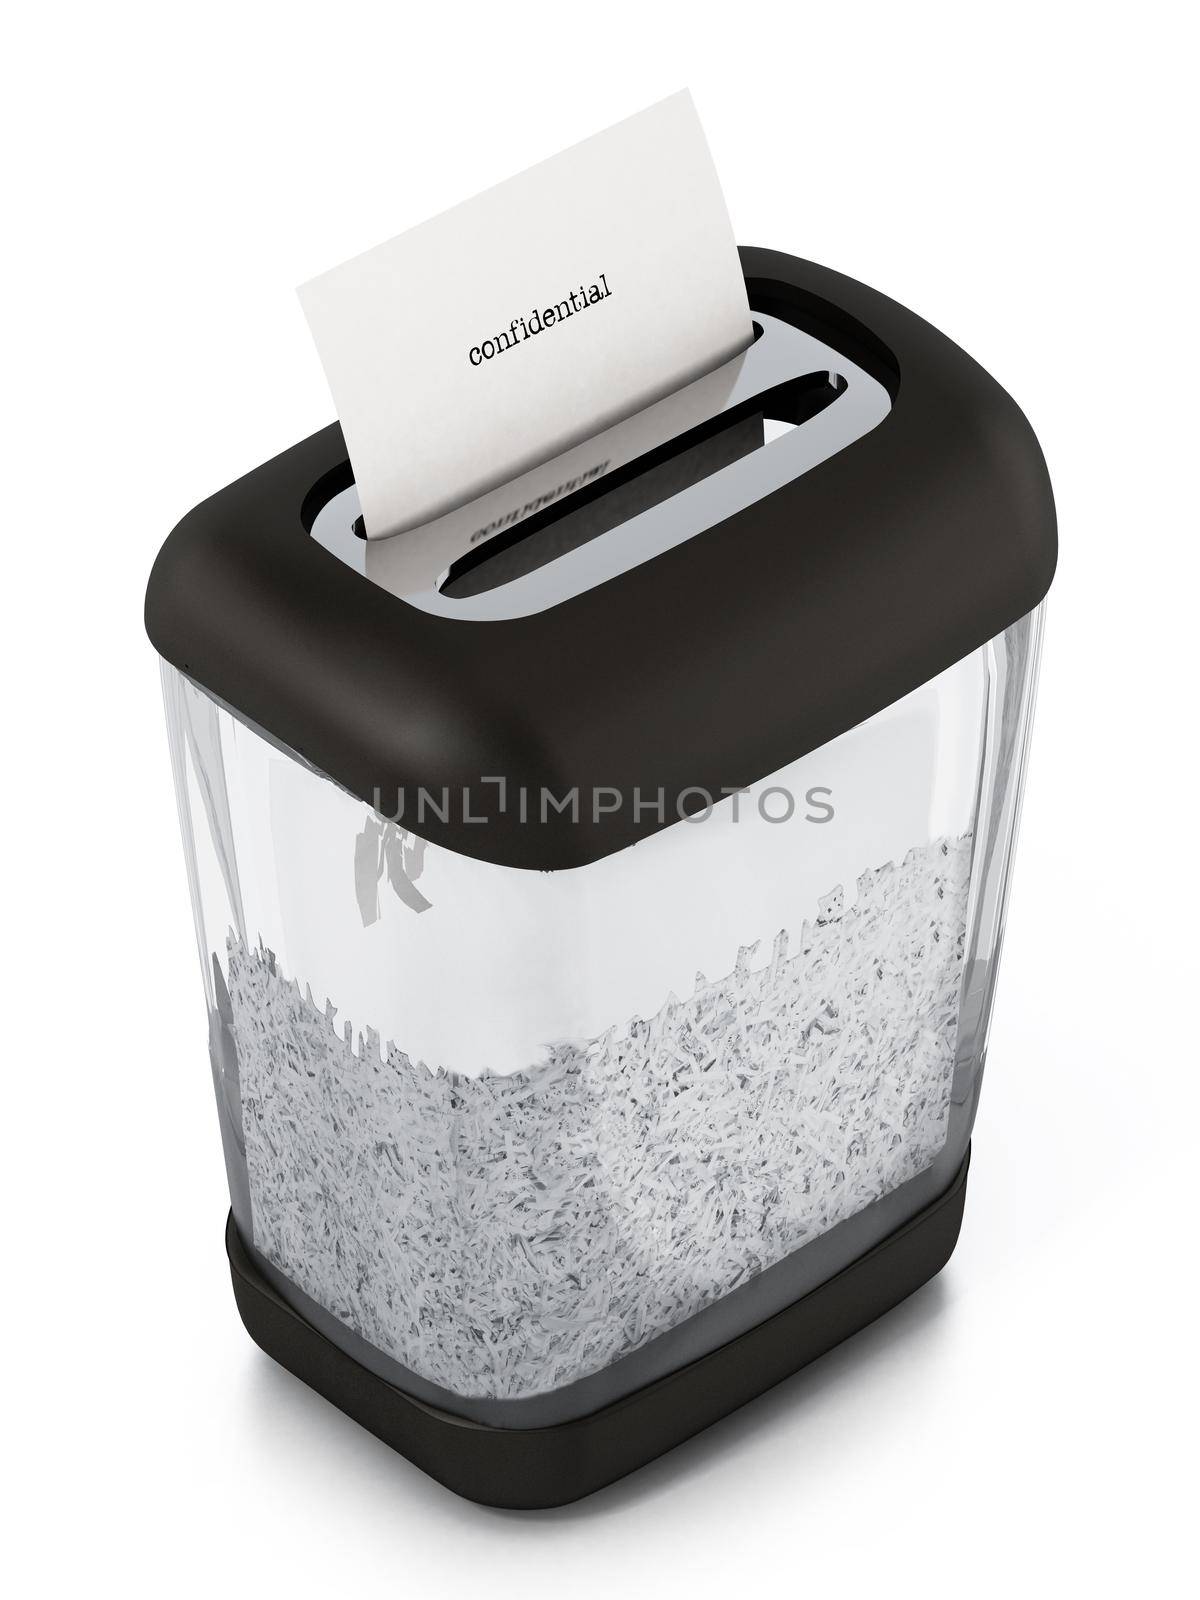 Paper shredder full of shredded paper. 3D illustration by Simsek